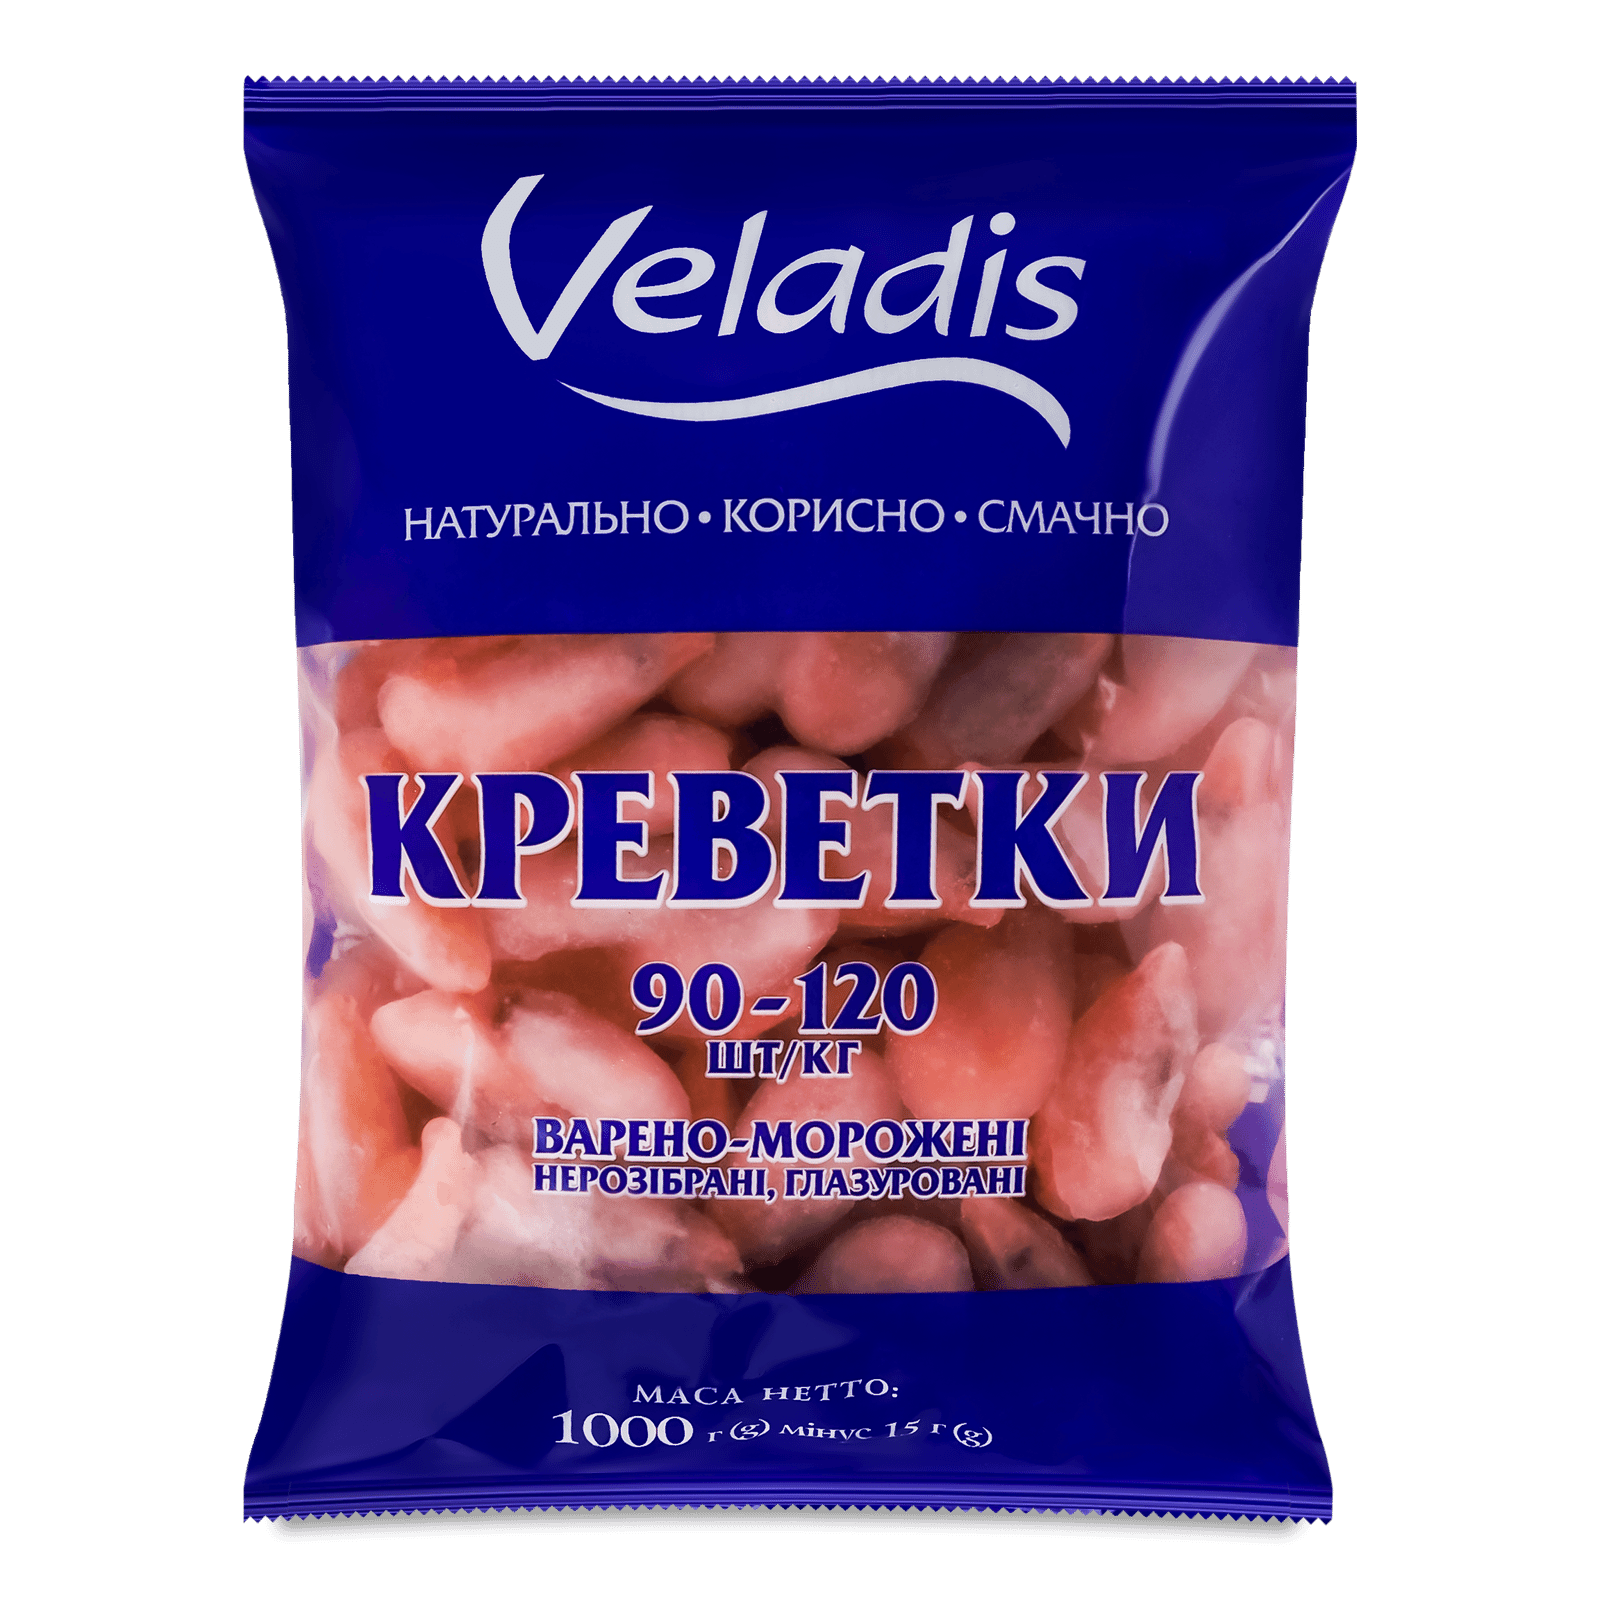 Креветки Veladis варено-морожені глазуровані 90-120 - 1